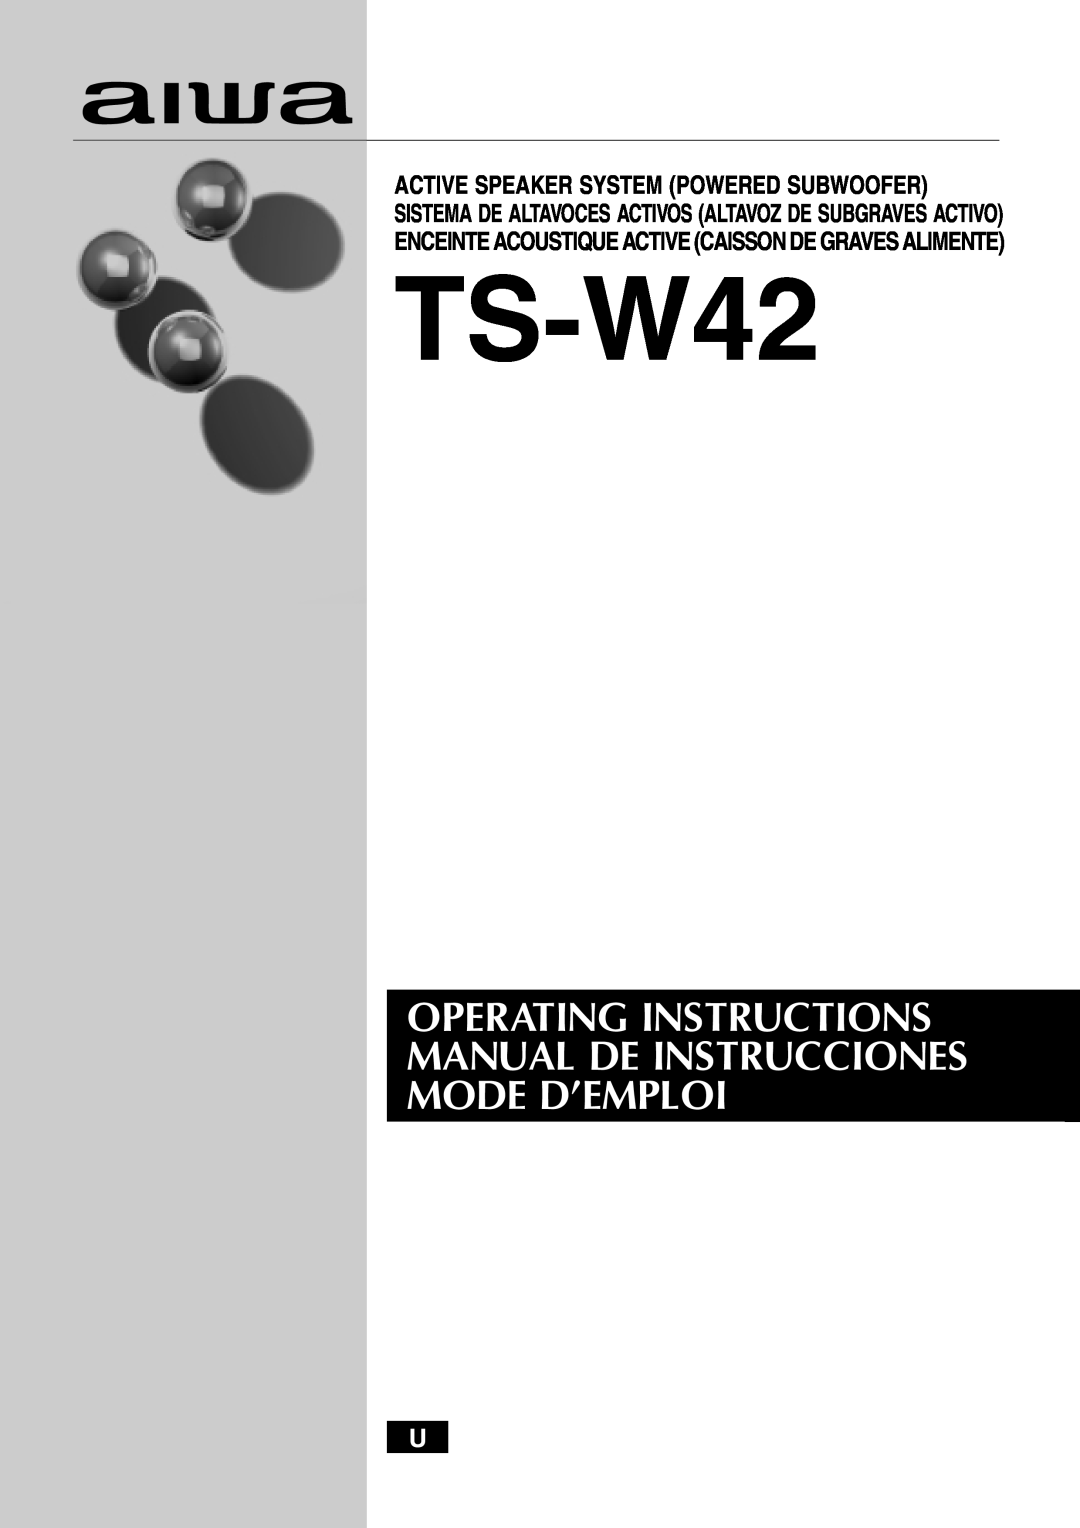 Aiwa TS-W42 U manual 